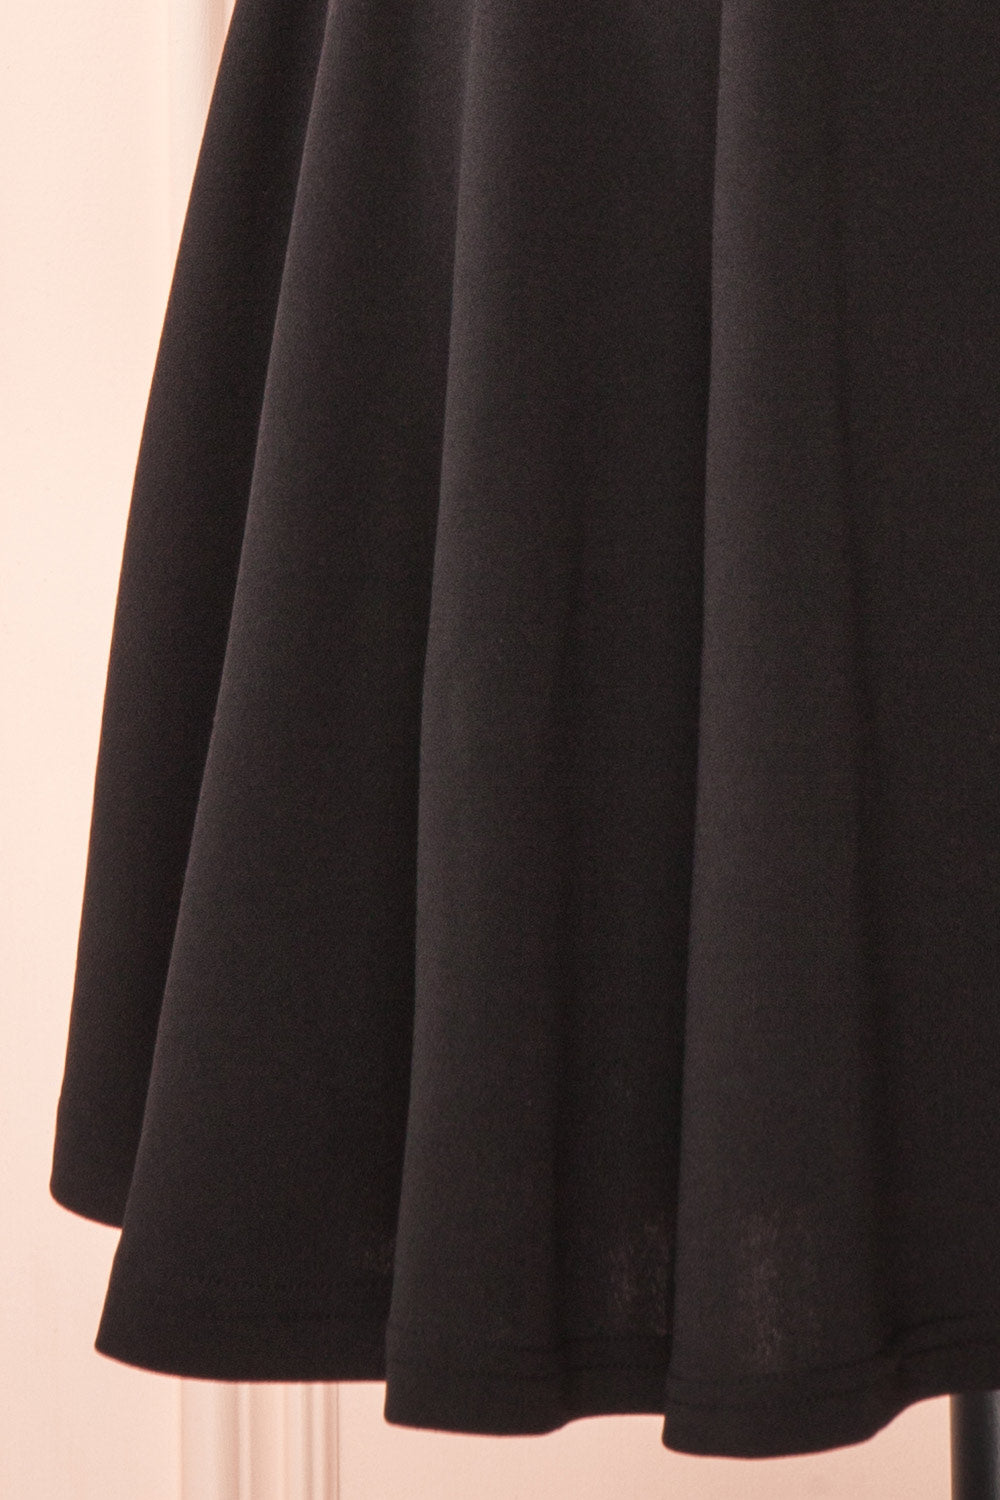 55.99] Simple Little Black Short Party Dress With Bow Neckline #BLS97013 -  GemGrace.com | Simple black dress, Homecoming dresses short, Black party dresses  short